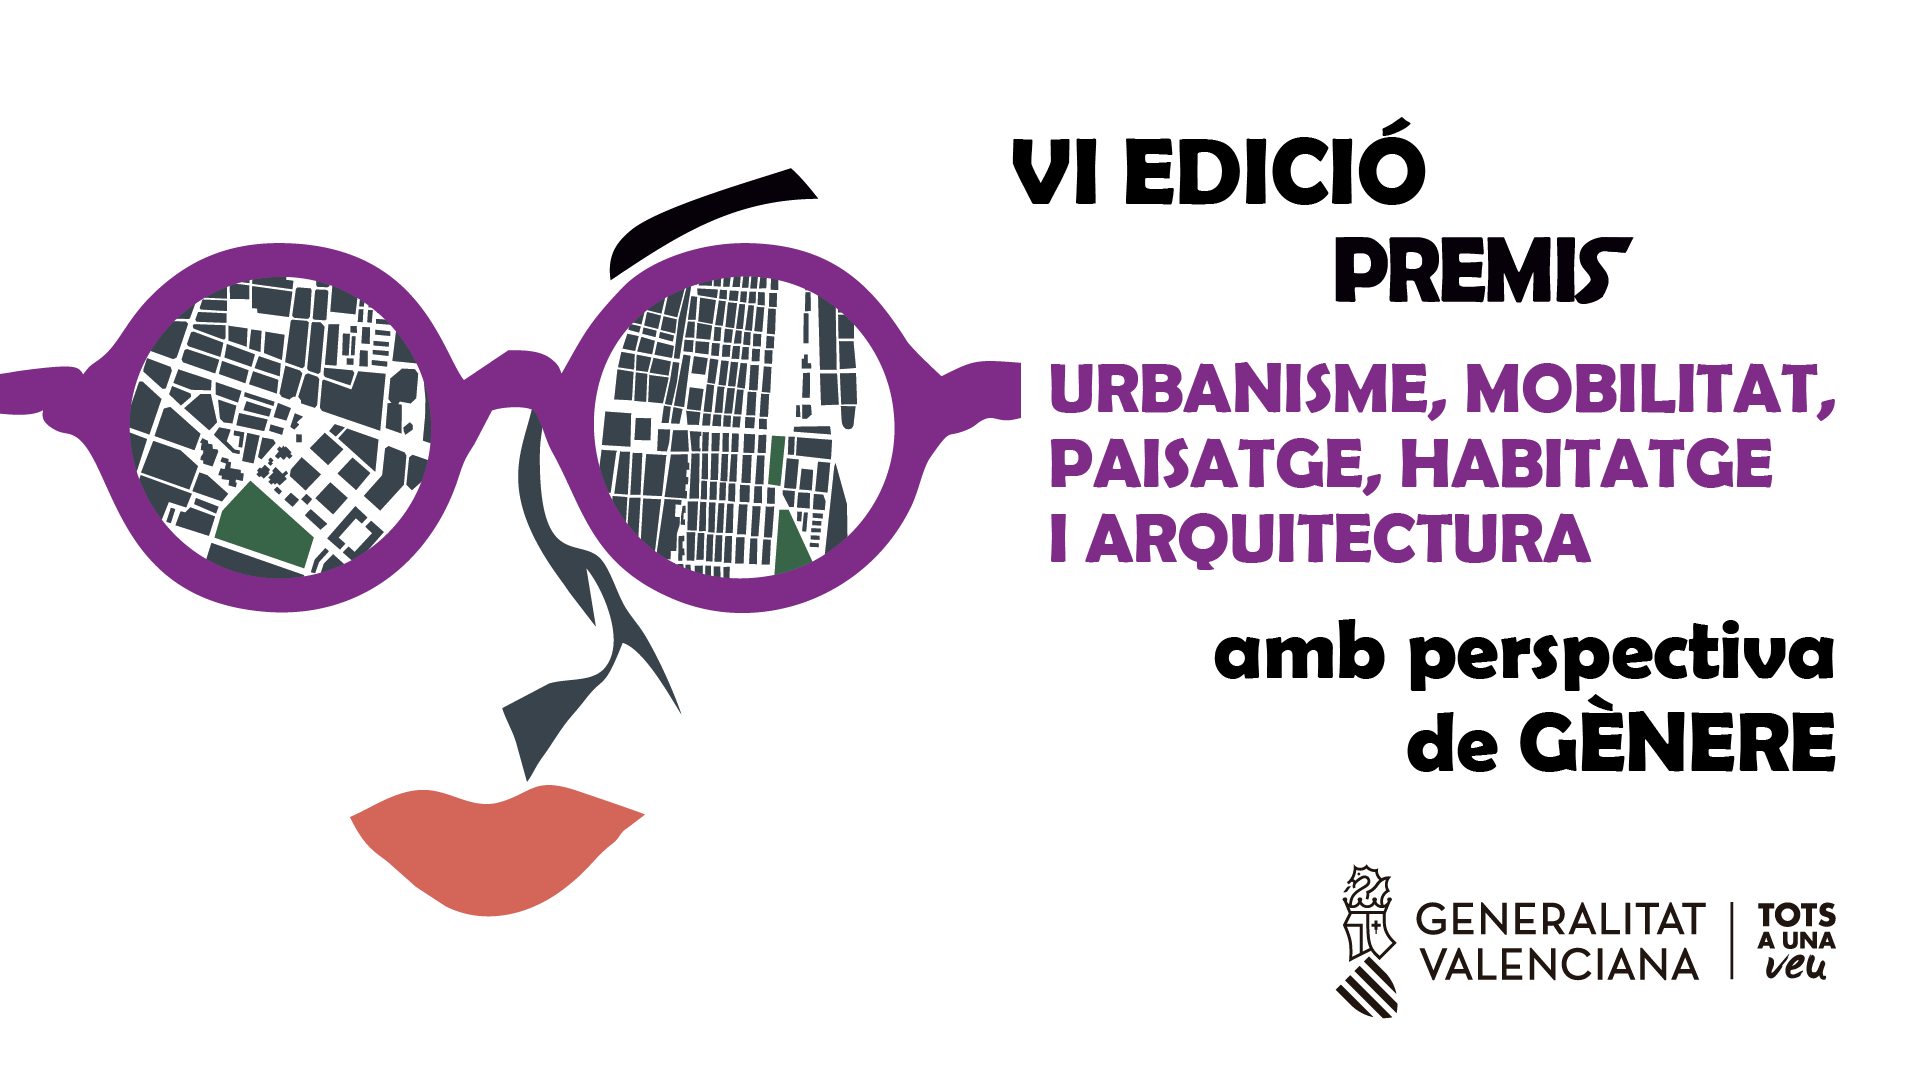 La Generalitat convoca los VI Premios Urbanismo, Movilidad, Paisaje, Vivienda y Arquitectura con Perspectiva de Género